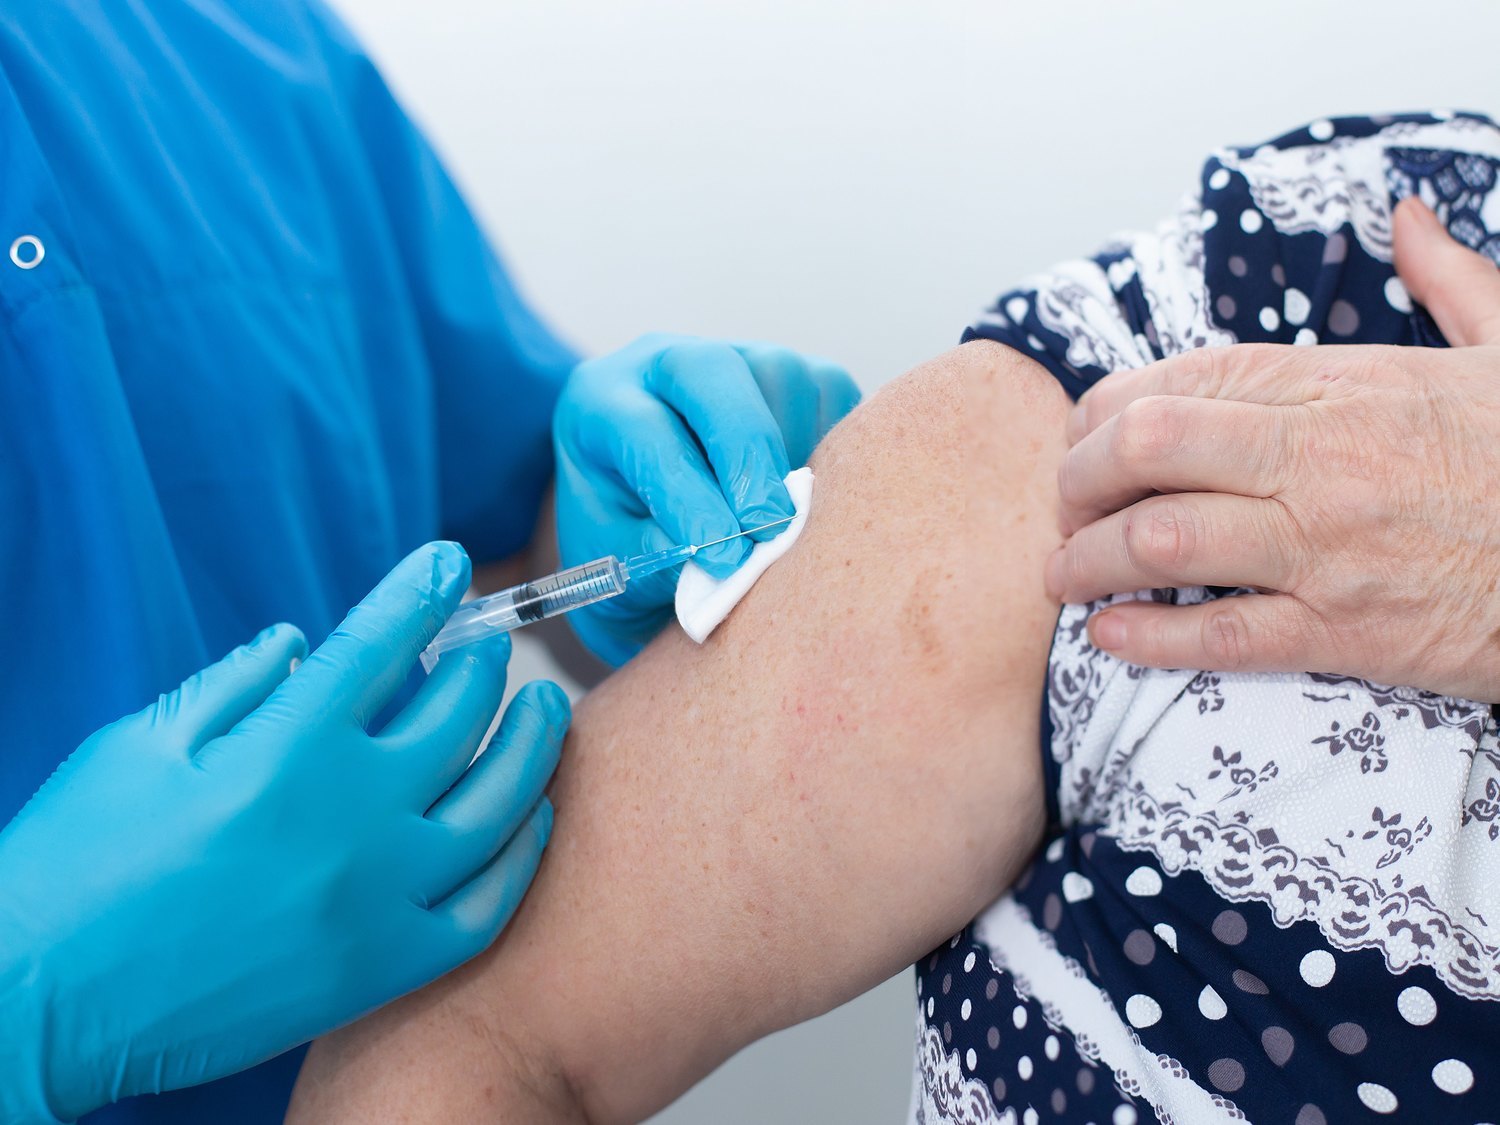 Una anciana aprovecha la vacuna del coronavirus para pedir auxilio: "¡Estoy secuestrada!"